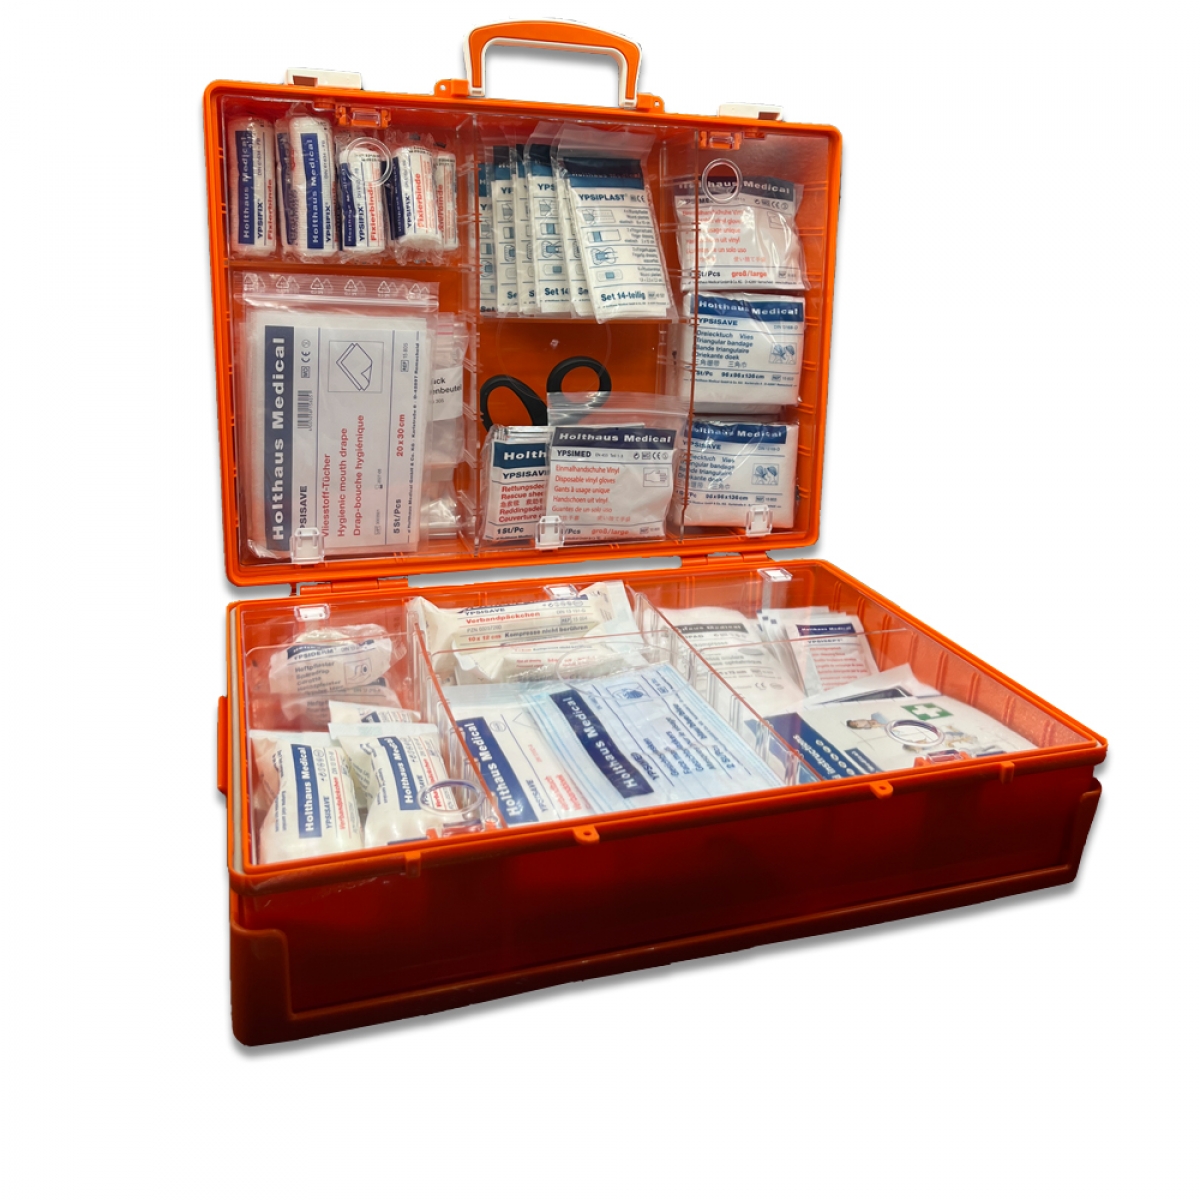 Holthaus Medical, Erste-Hilfe, MULTI Erste-Hilfe-Koffer